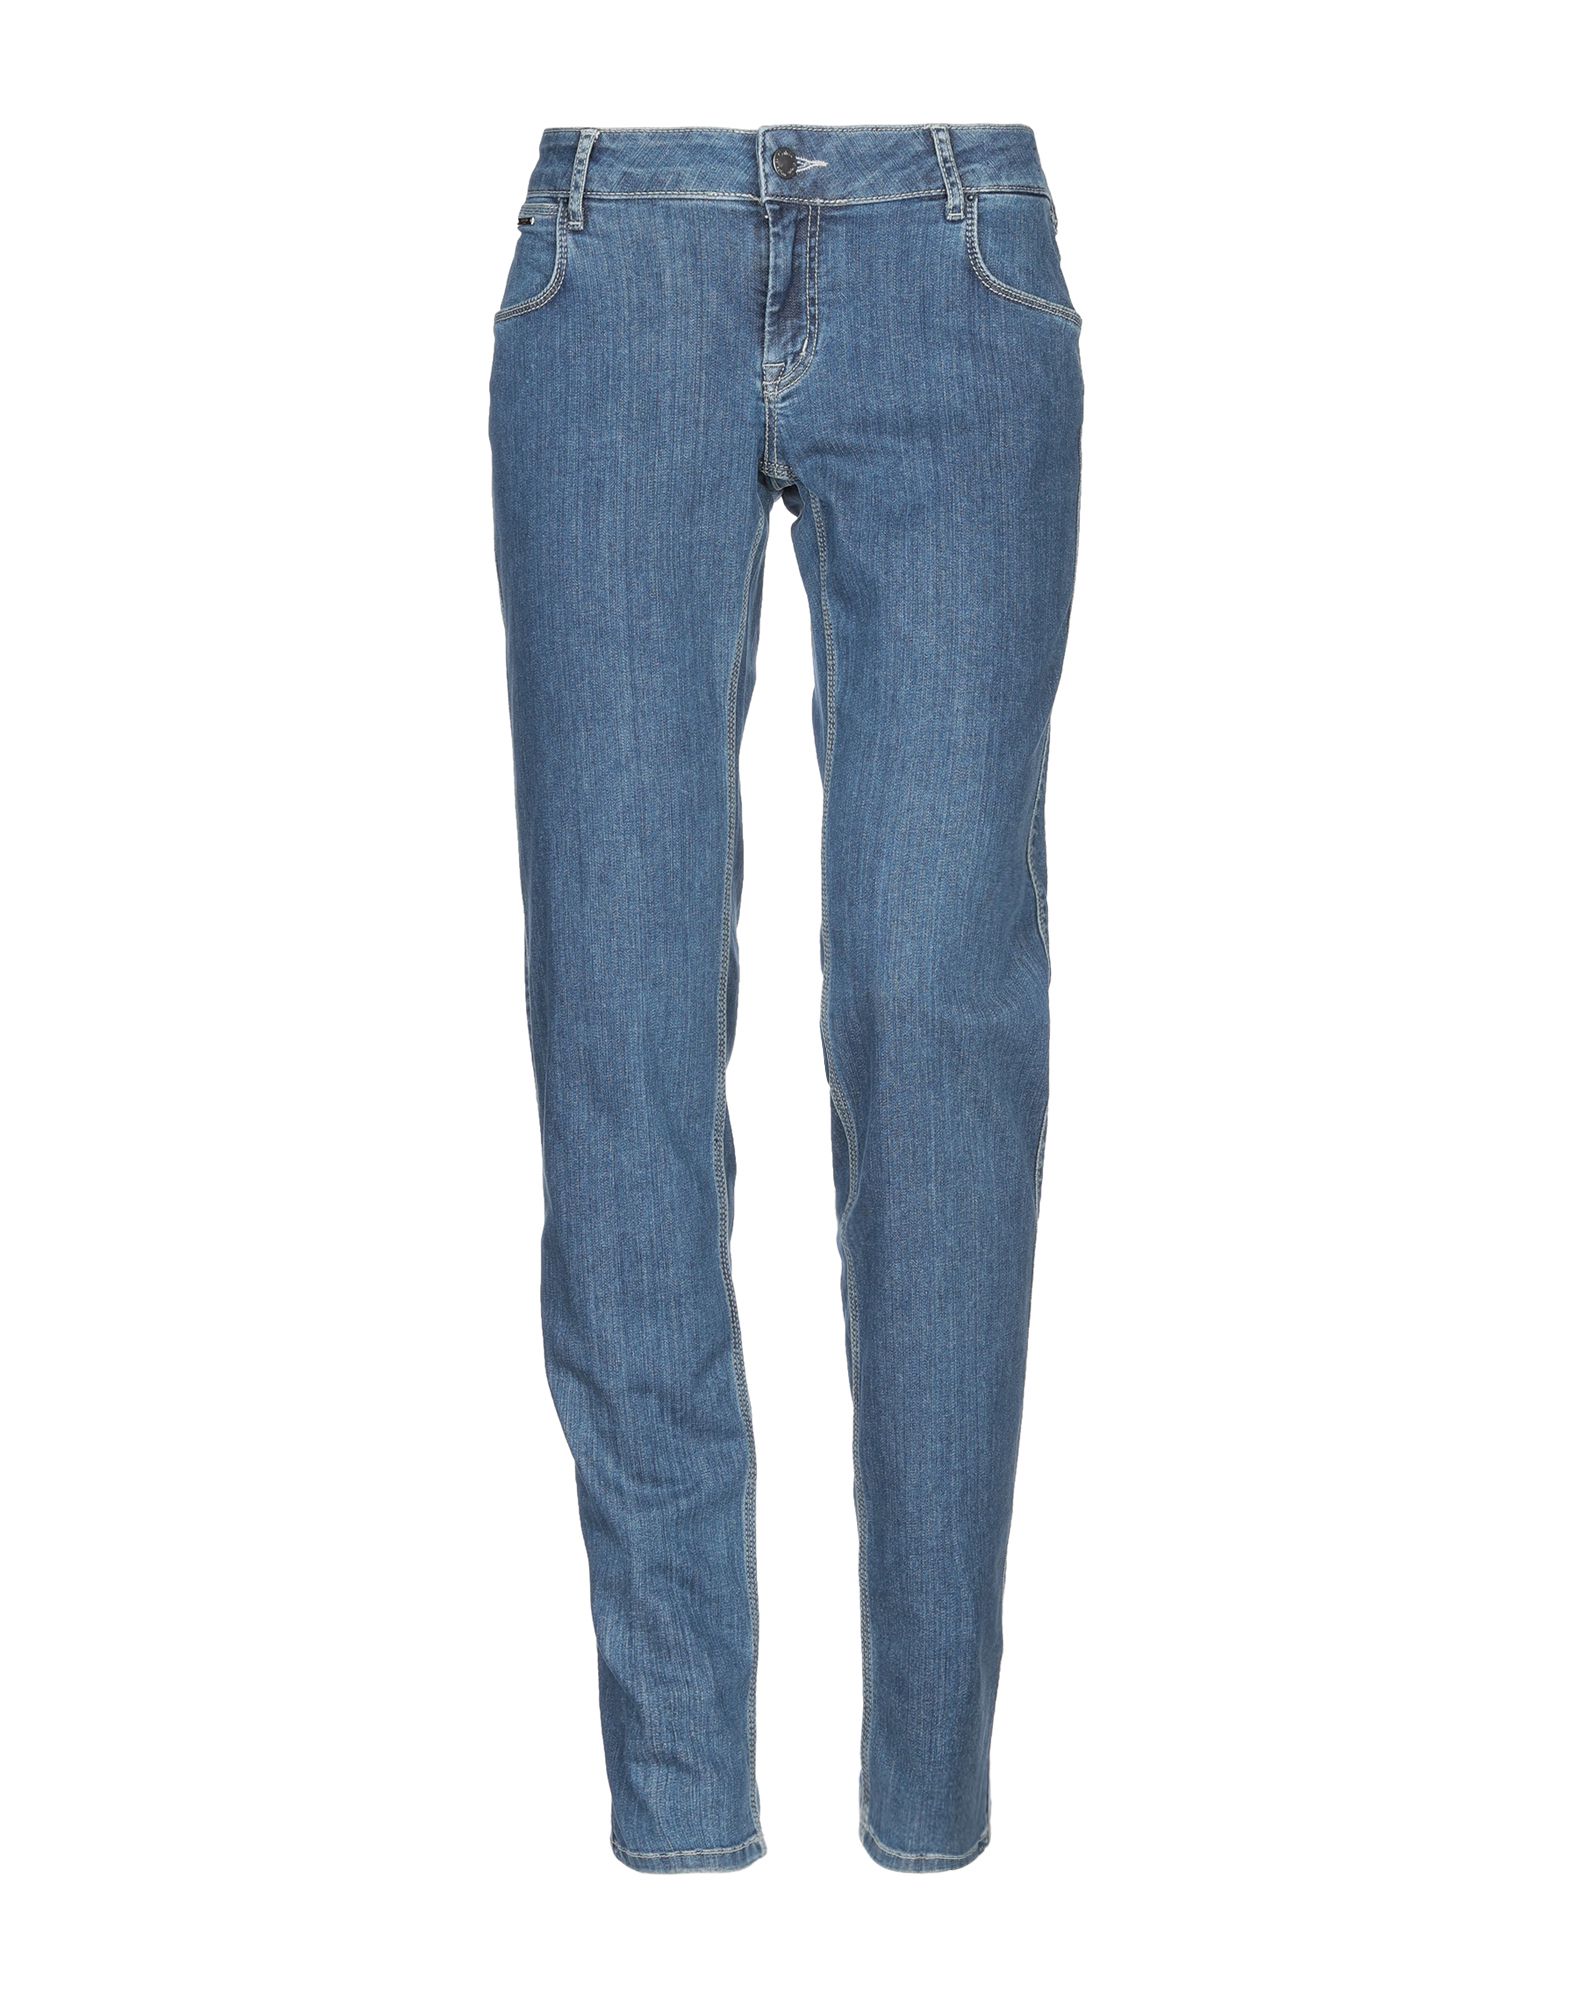 calvin klein jeans collection